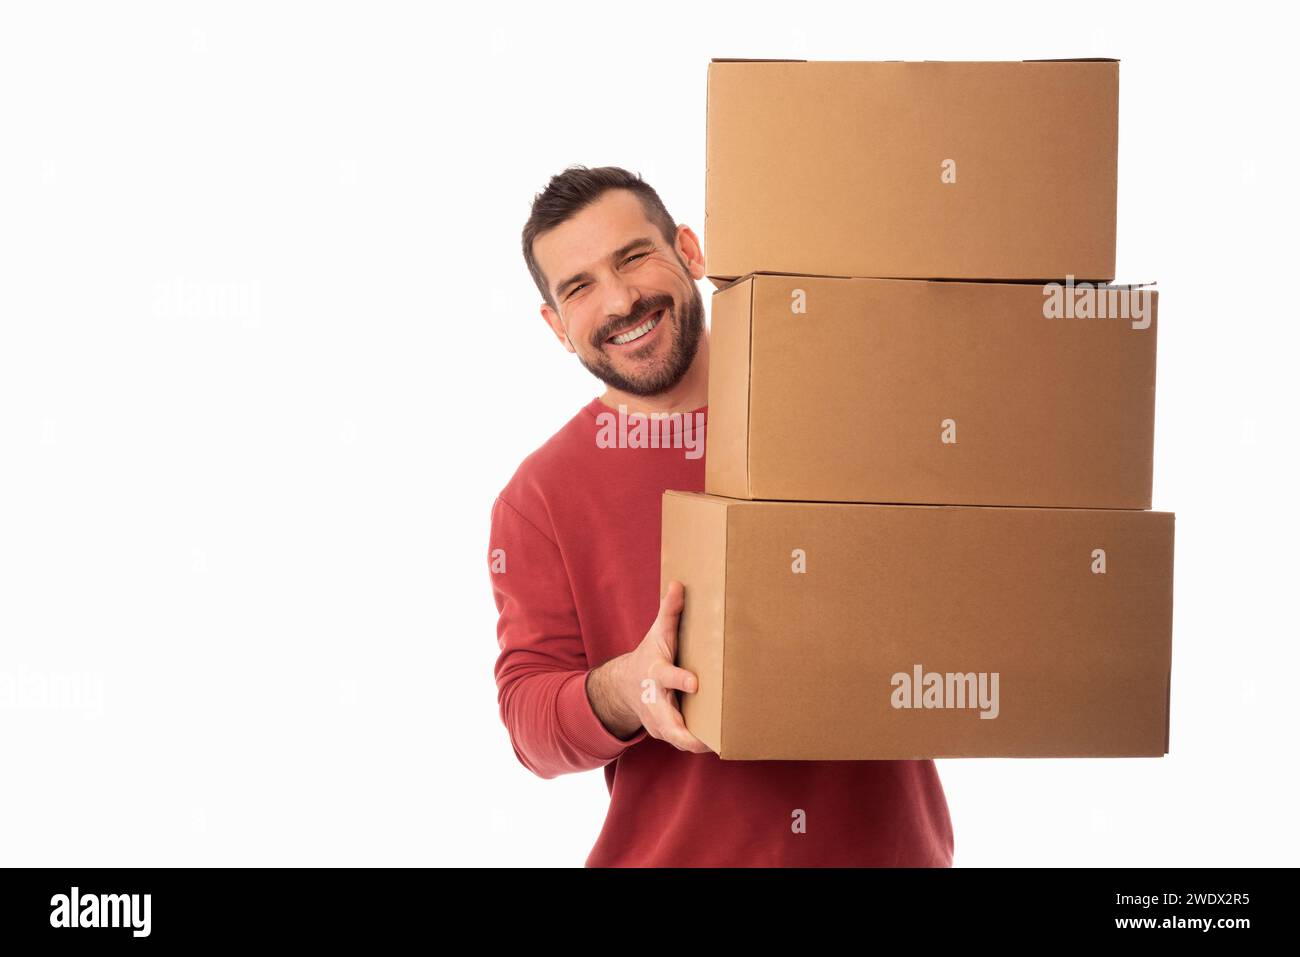 Lächelnder bärtiger Mann auf weißem Hintergrund, der große Kartons hält. Lieferung von Paketen. Verbesserungen im Haushalt. Organisation persönlicher Gegenstände Stockfoto